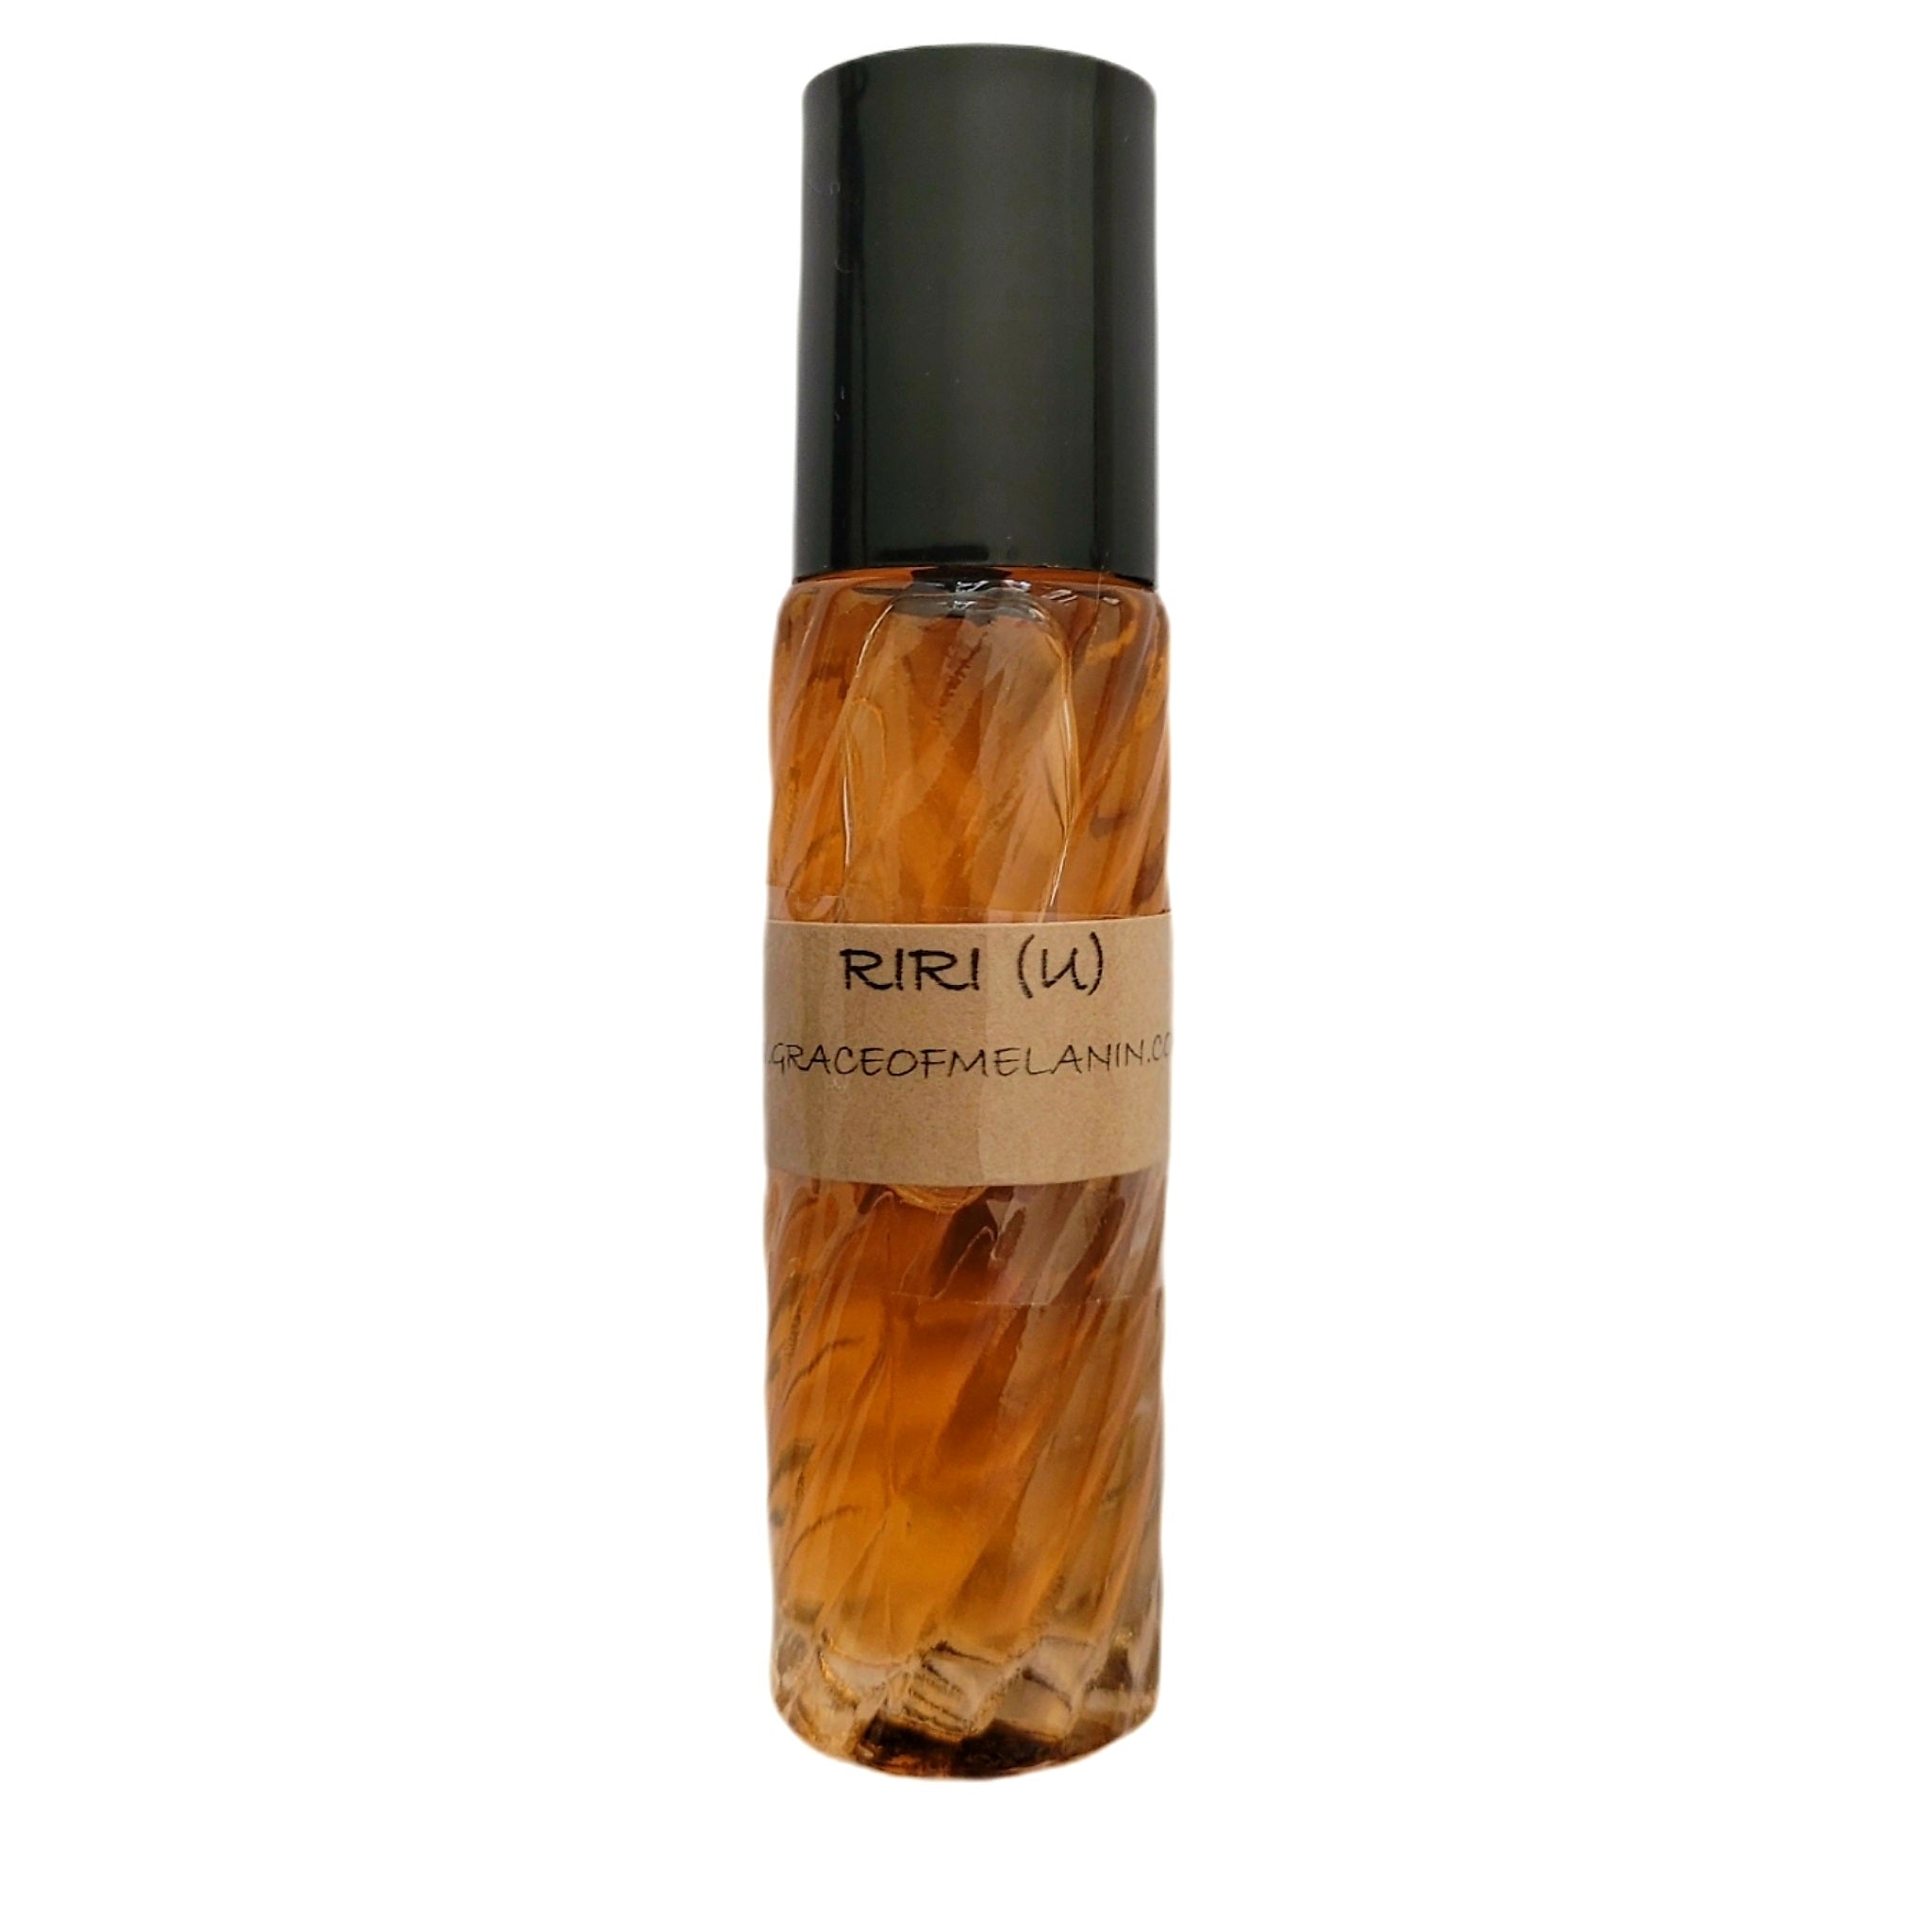 Riri (U) Fragrance Body Oil (Grade A, 100% Uncut) - Grace of Melanin